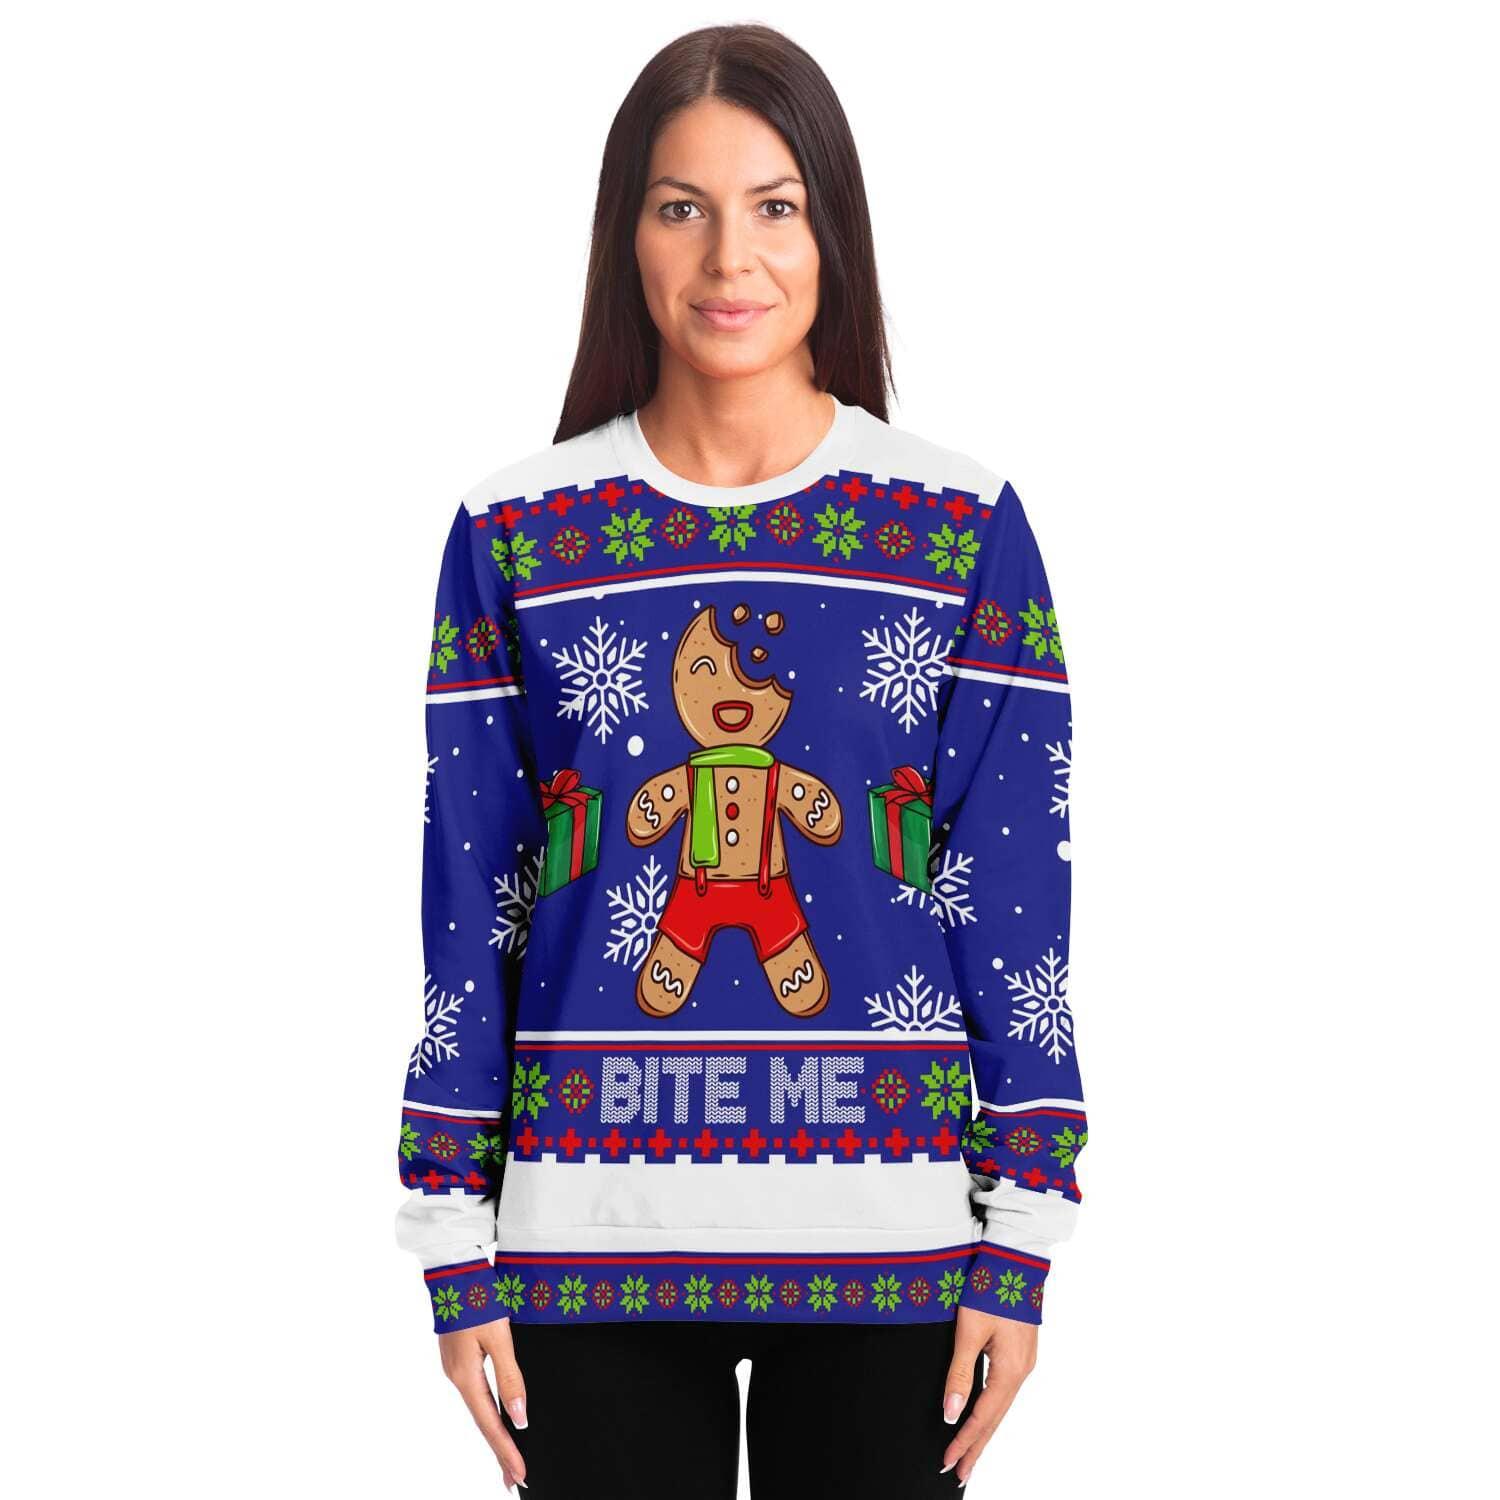 Bite Me Gingerbread Unisex Ugly Christmas Sweatshirt - TopKoalaTee